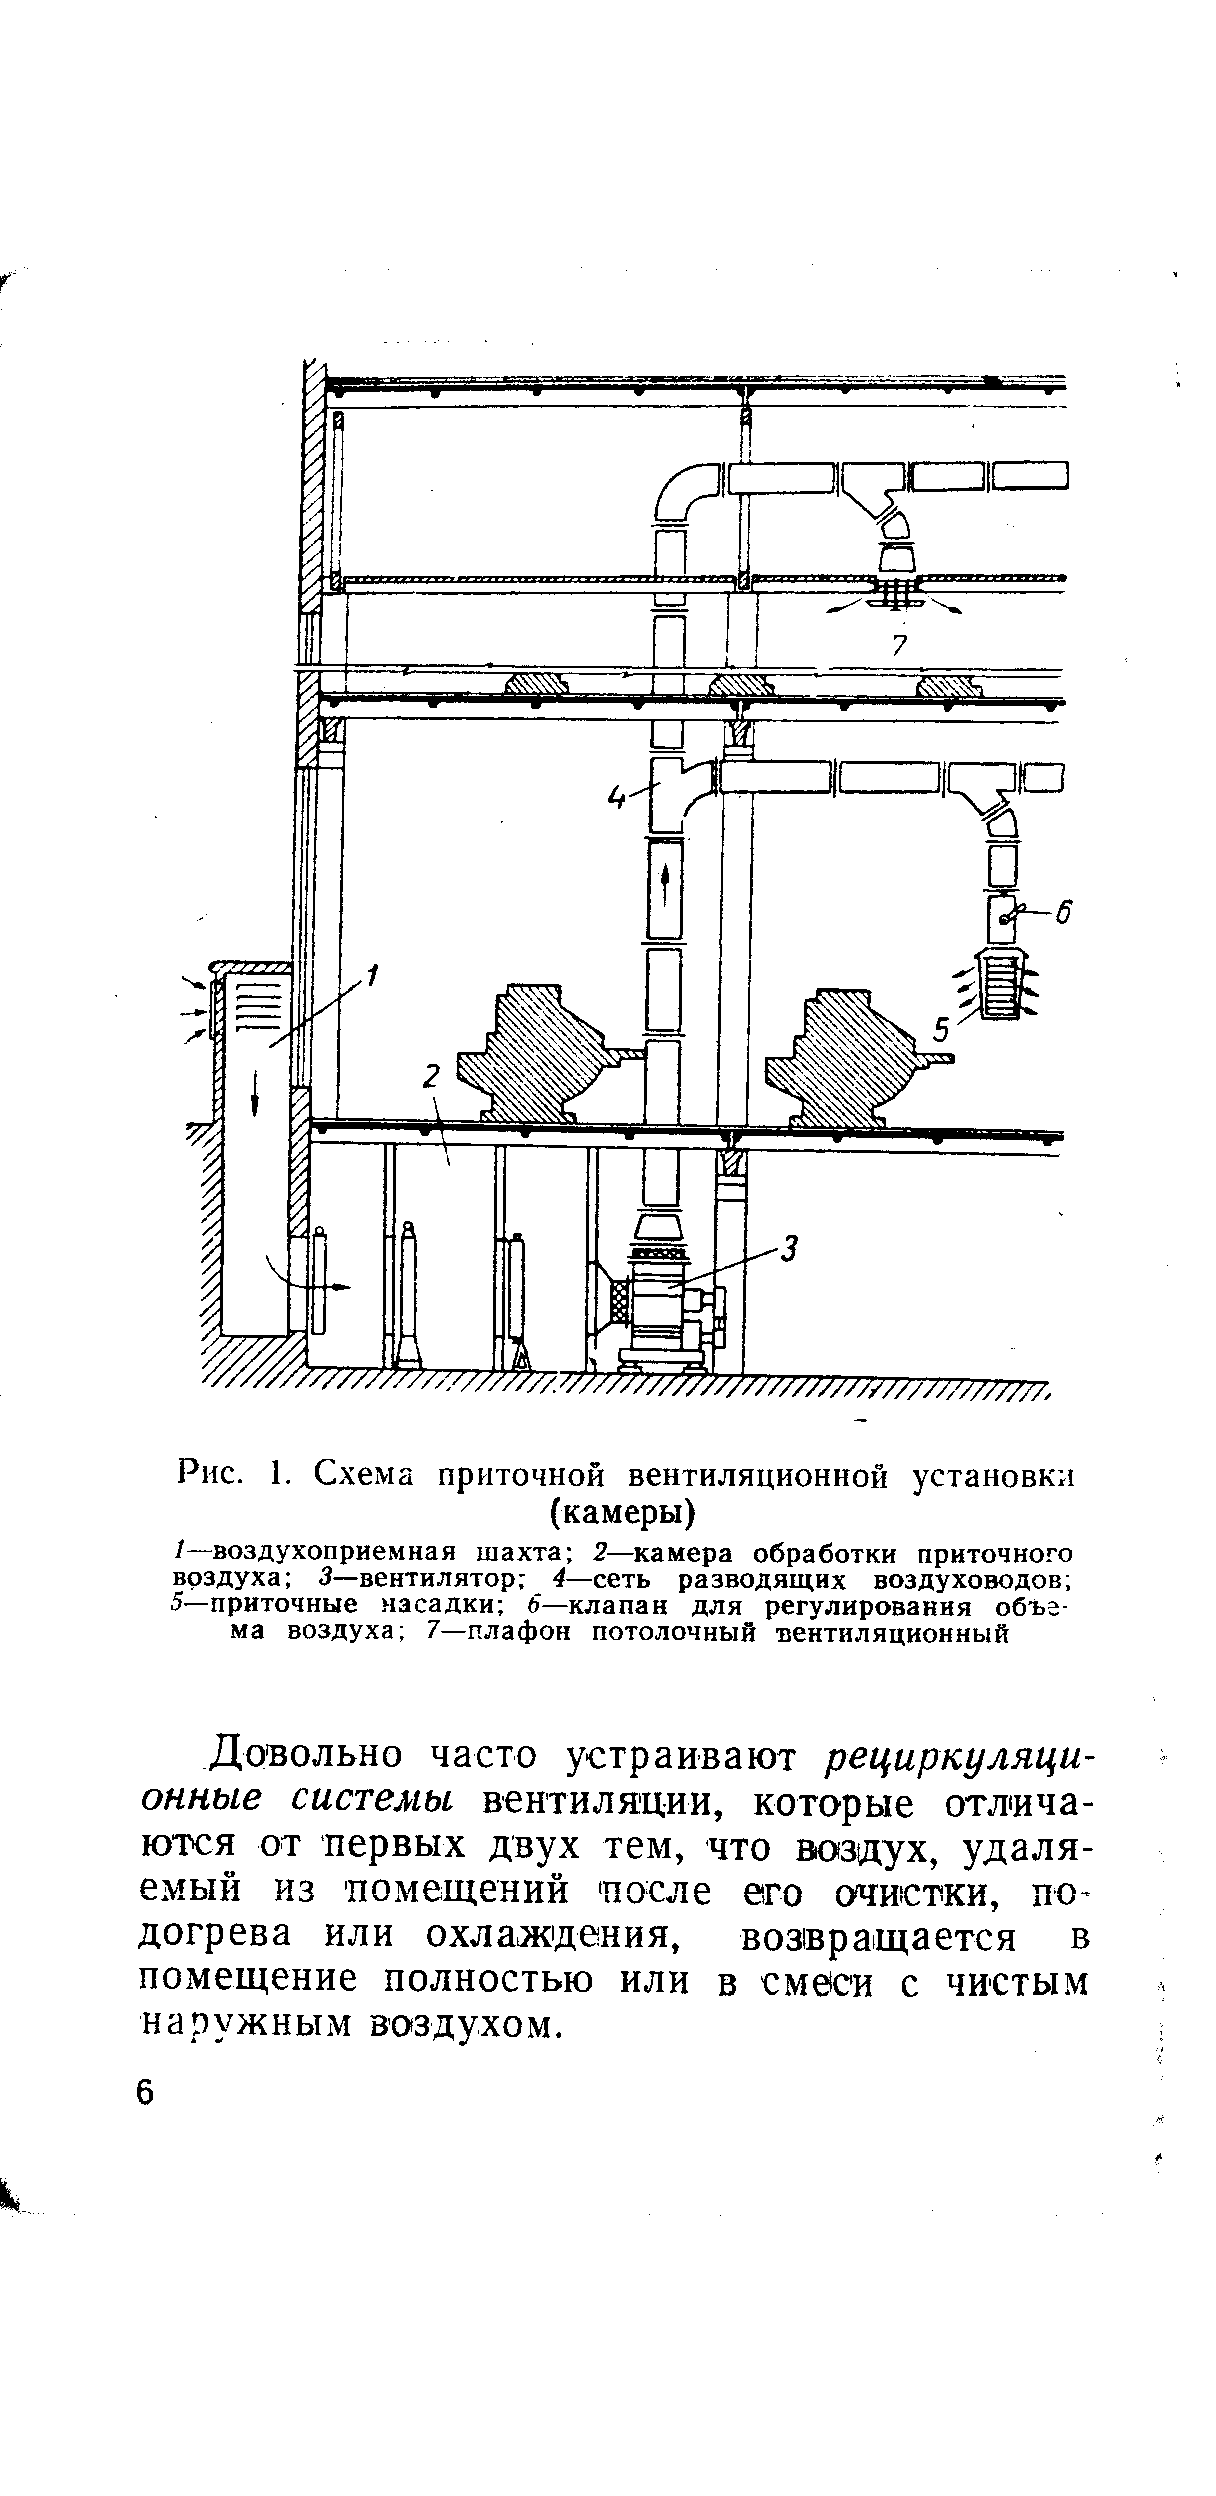 Рис. 1. С-хема приточной вентиляционной установки (камеры)
